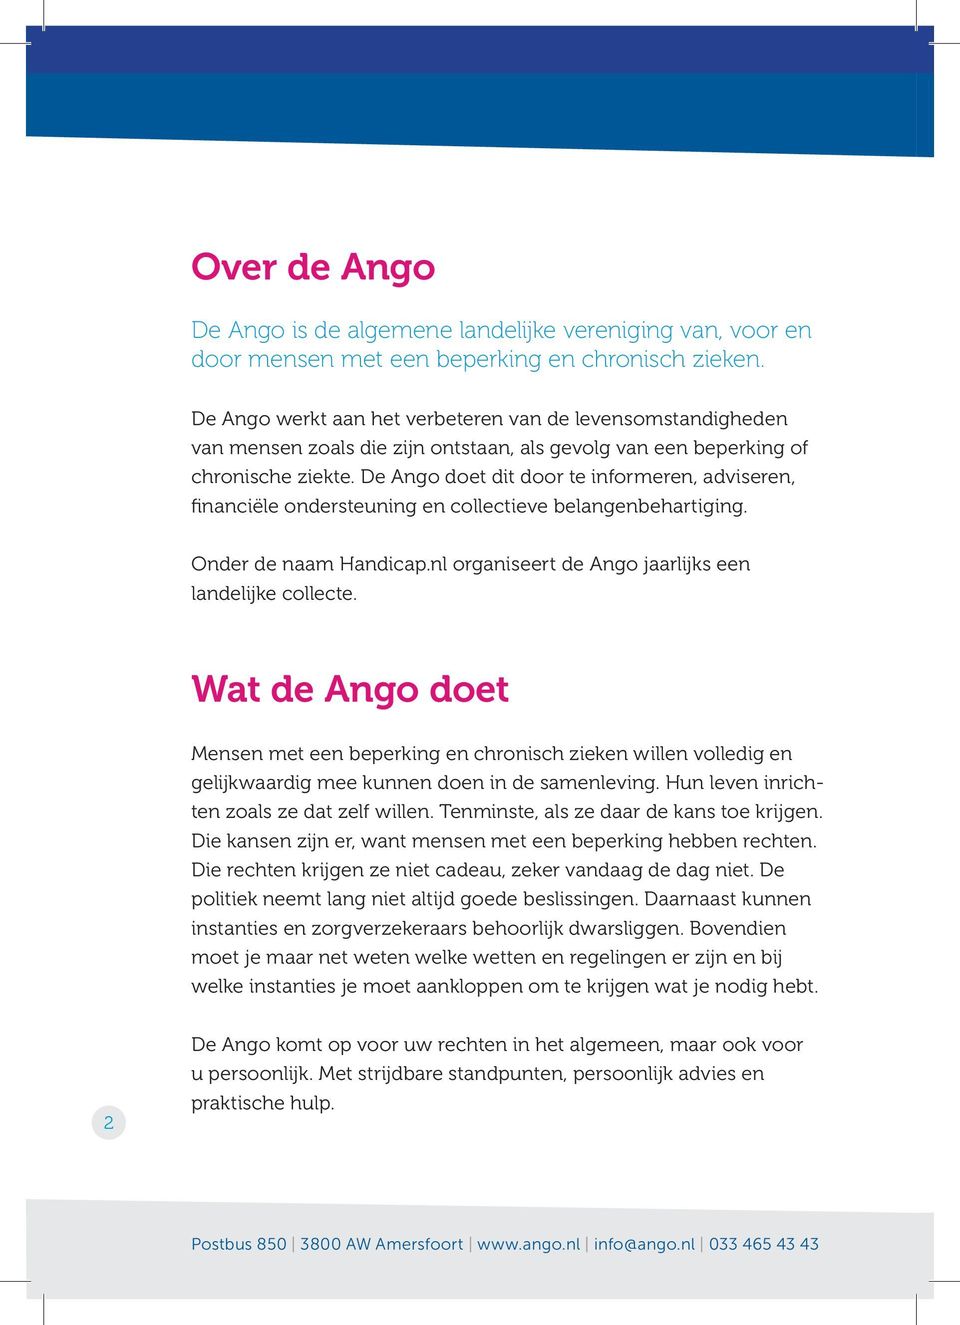 De Ango doet dit door te informeren, adviseren, financiële ondersteuning en collectieve belangenbehartiging. Onder de naam Handicap.nl organiseert de Ango jaarlijks een landelijke collecte.